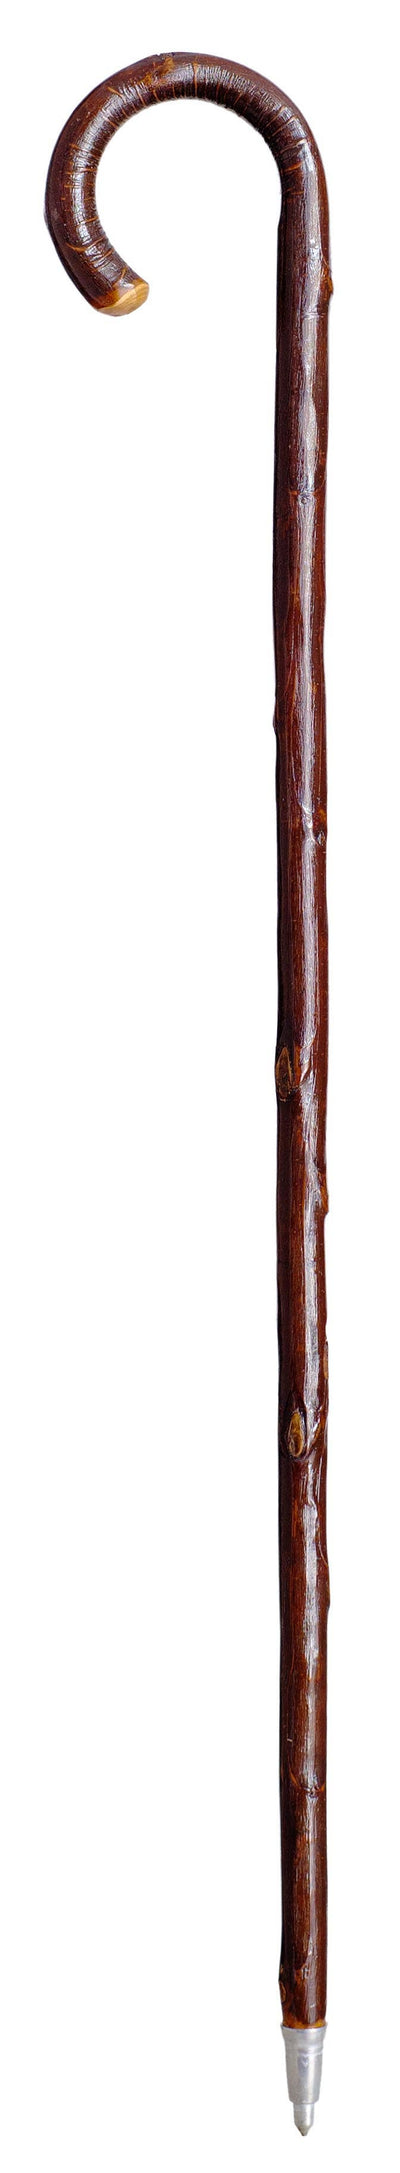 Trekking Stick in Chestnut Wood with Curved Handle - Dark Brown